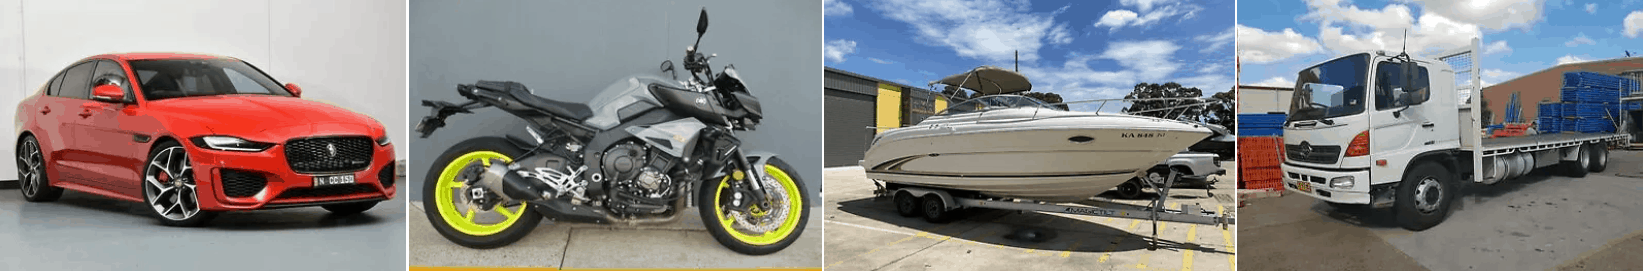 Pawn loans against a Car | Bike | Boat | Truck @upawn.com.au